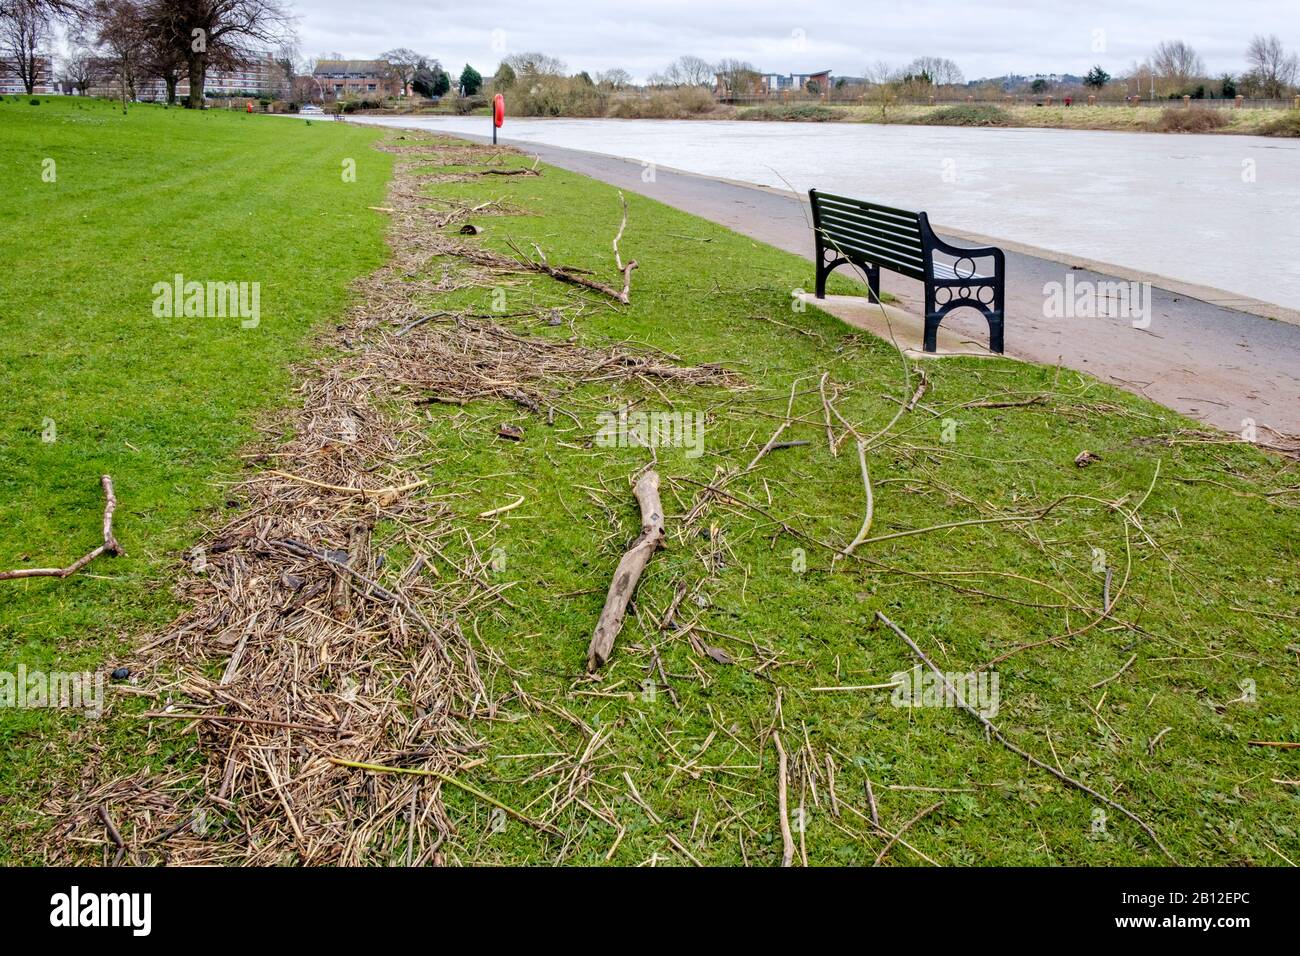 Los escombros del río marcan el alto nivel de agua de las inundaciones a lo largo de una orilla del río Trent, Nottingham, Inglaterra, Reino Unido Foto de stock